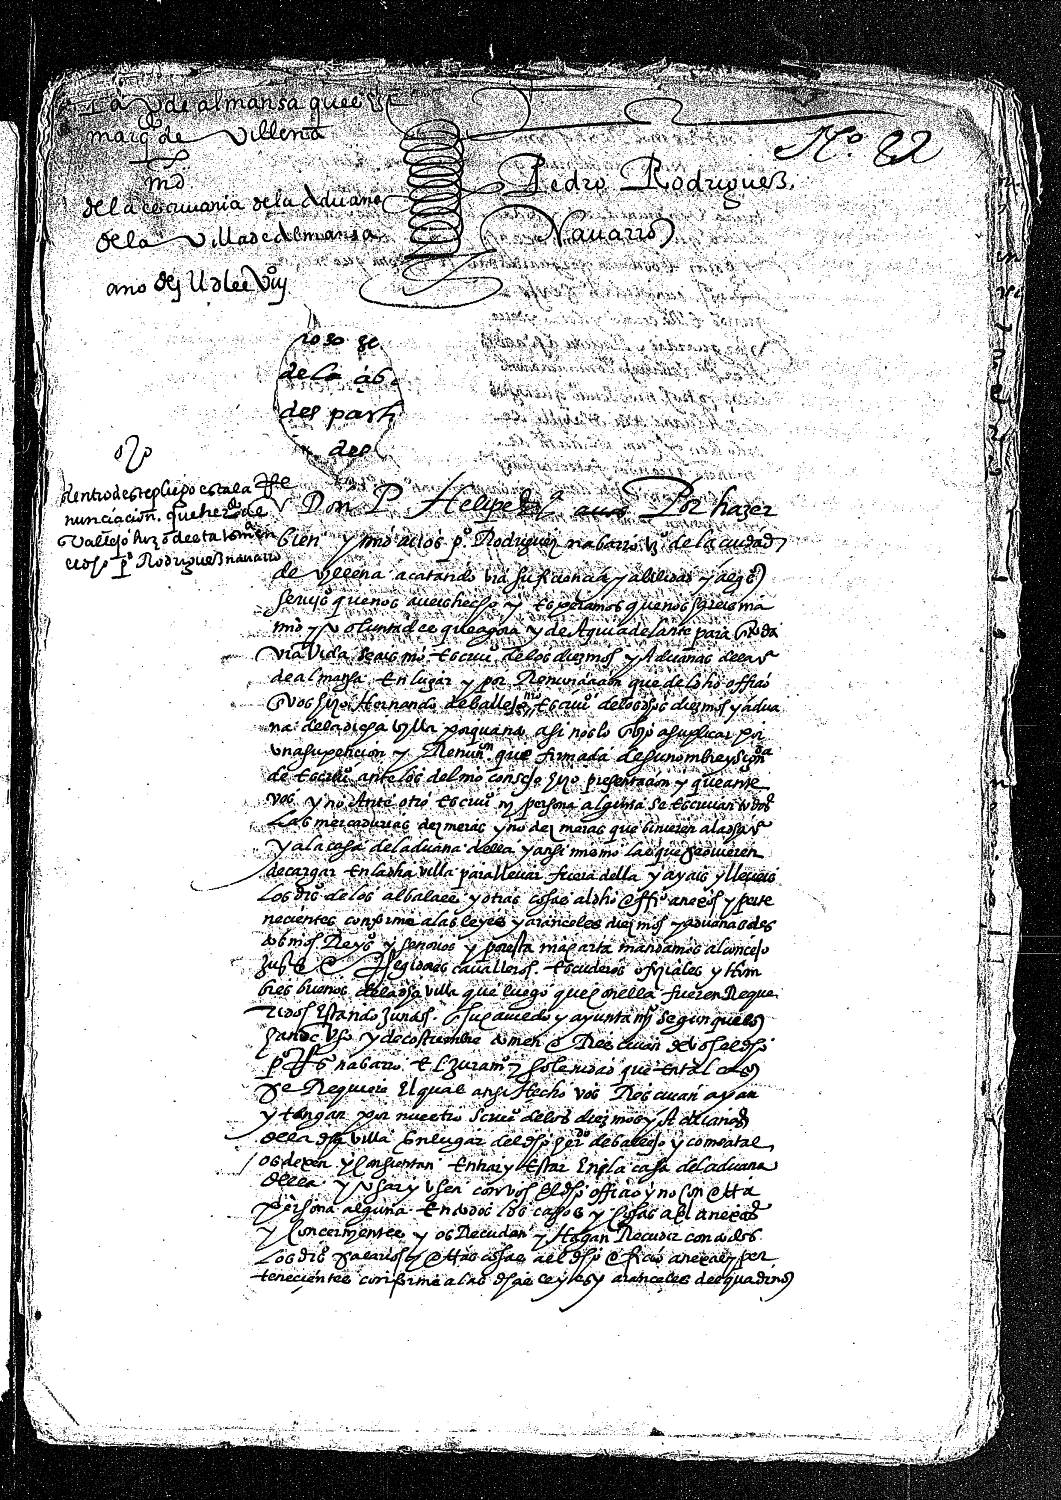 Carta real concediendo a Pedro Rodríguez Navarro, vecino de Villena, el oficio de escribano de los diezmos y aduanas de la villa de Almansa, por renunciarlo en él Hernando Vallejo.